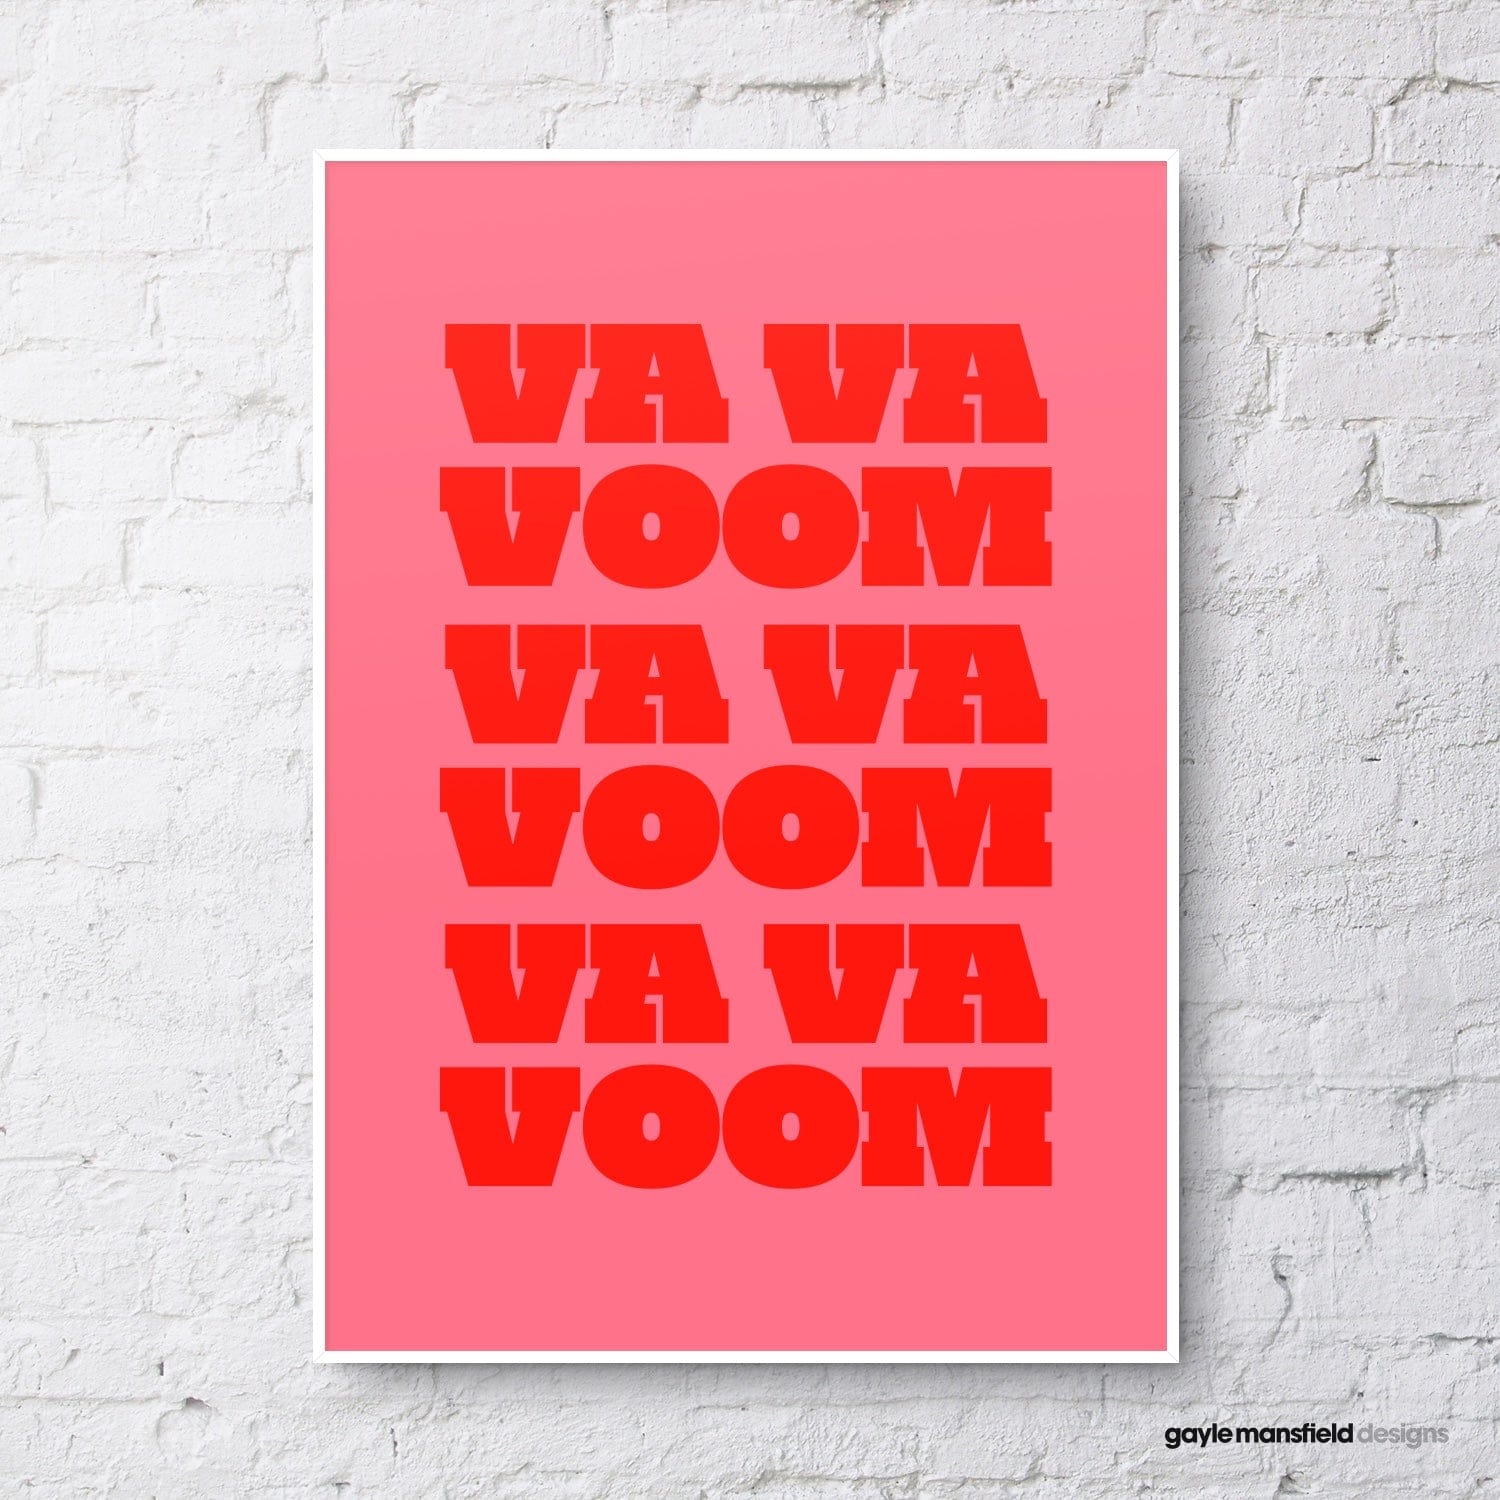 Va va voom (dark pink / red) unframed print